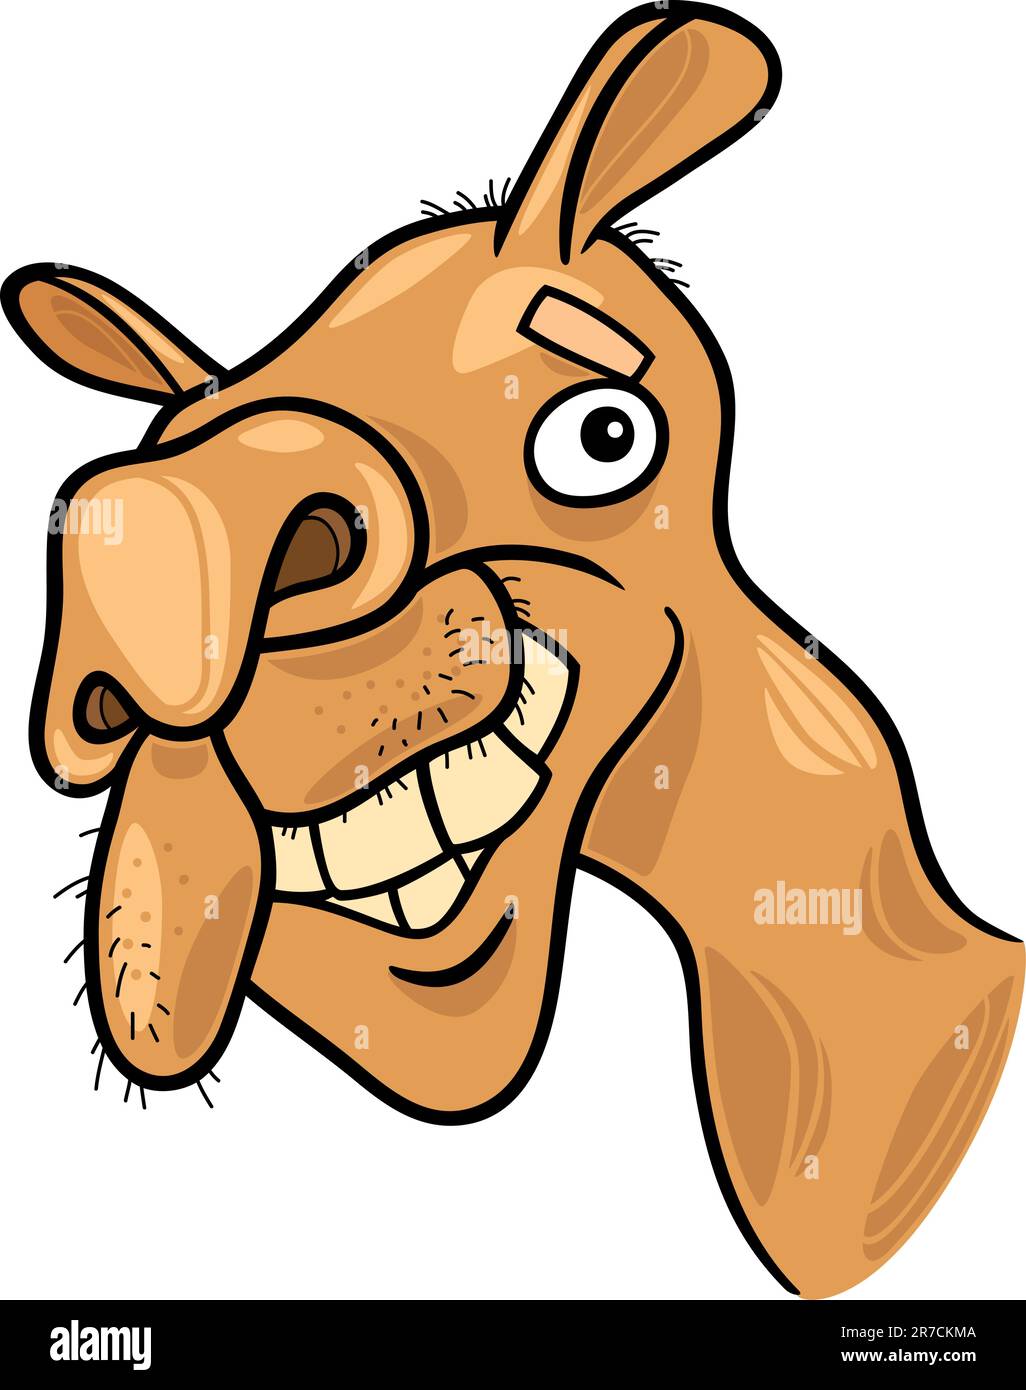 cartoon illustration of dromedary camel Stock Vector